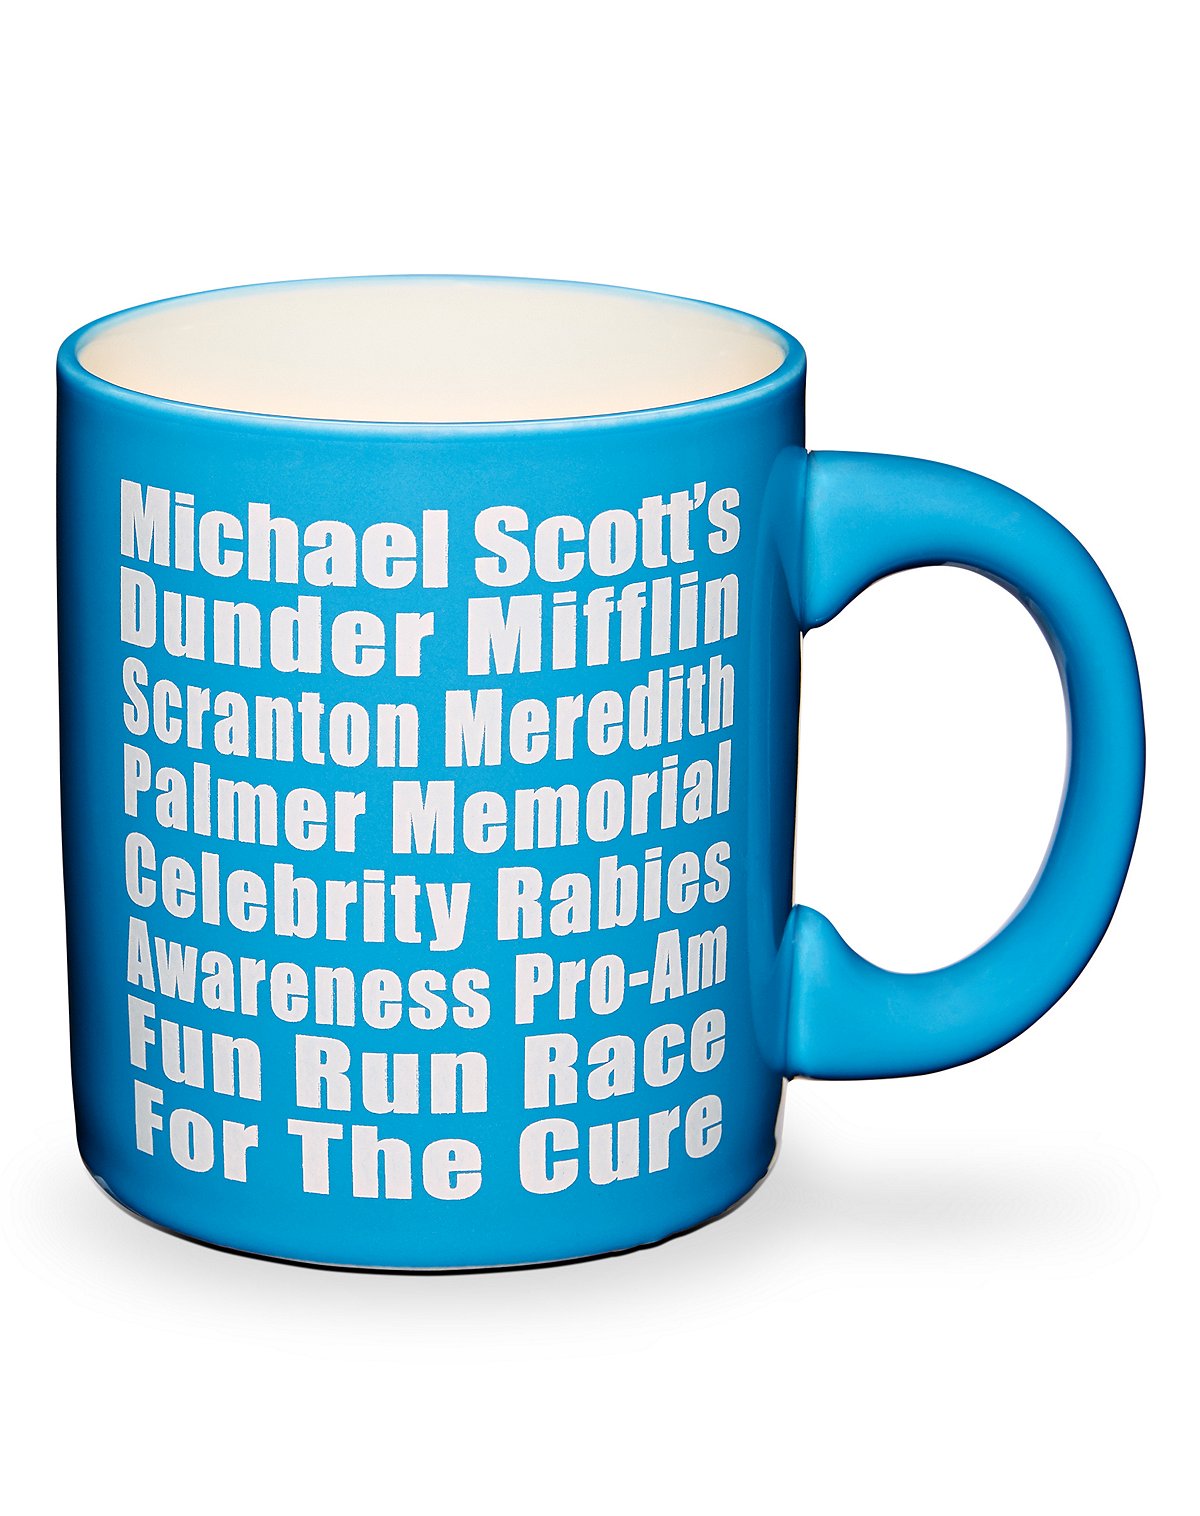 Fun Run Race Coffee Mug